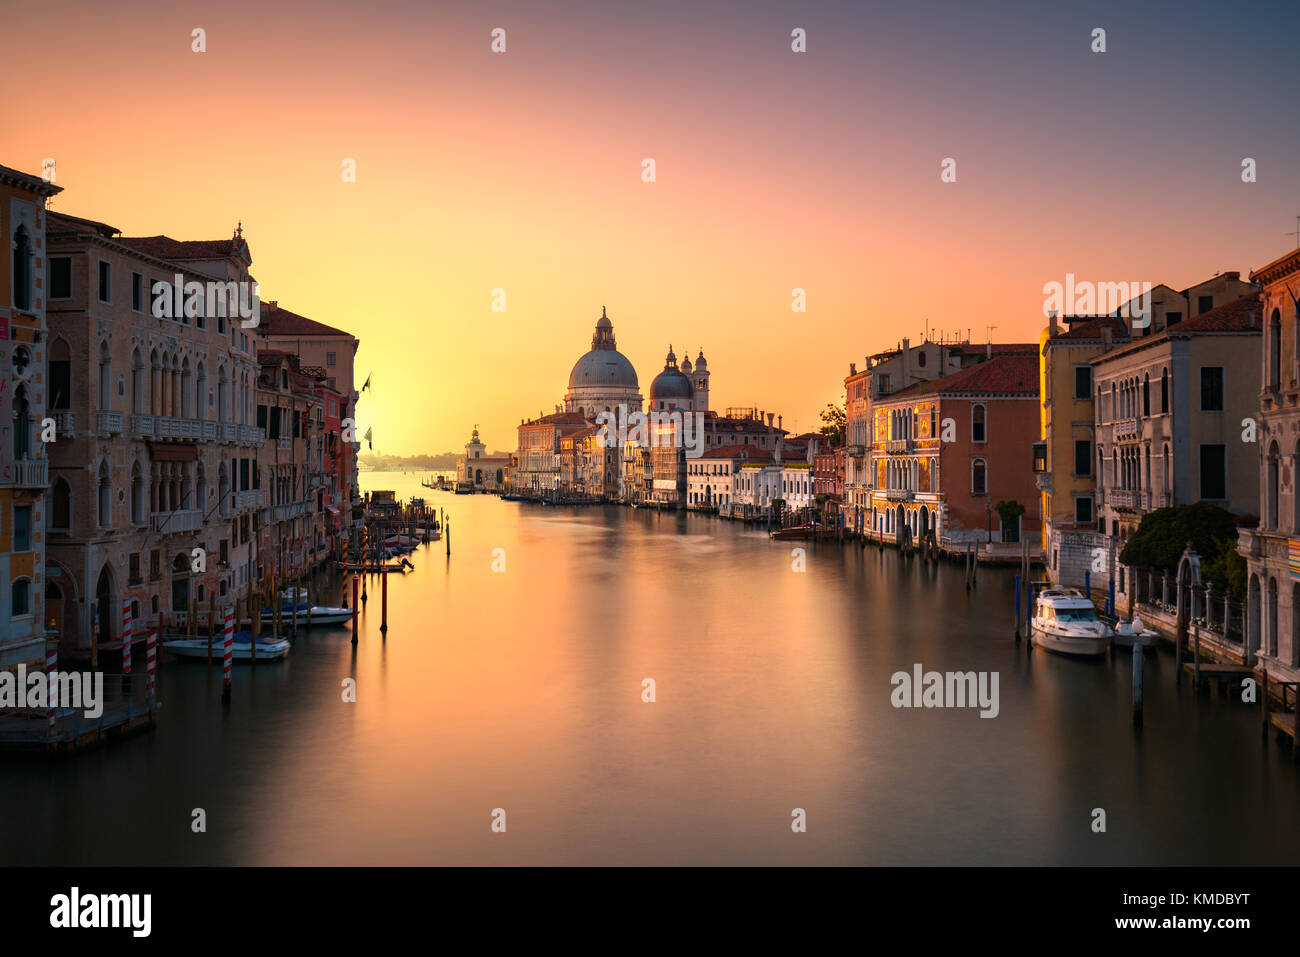 Vue sur le grand canal de Venise, l'église Santa Maria della Salute vue au lever du soleil. L'Italie, l'Europe. Banque D'Images